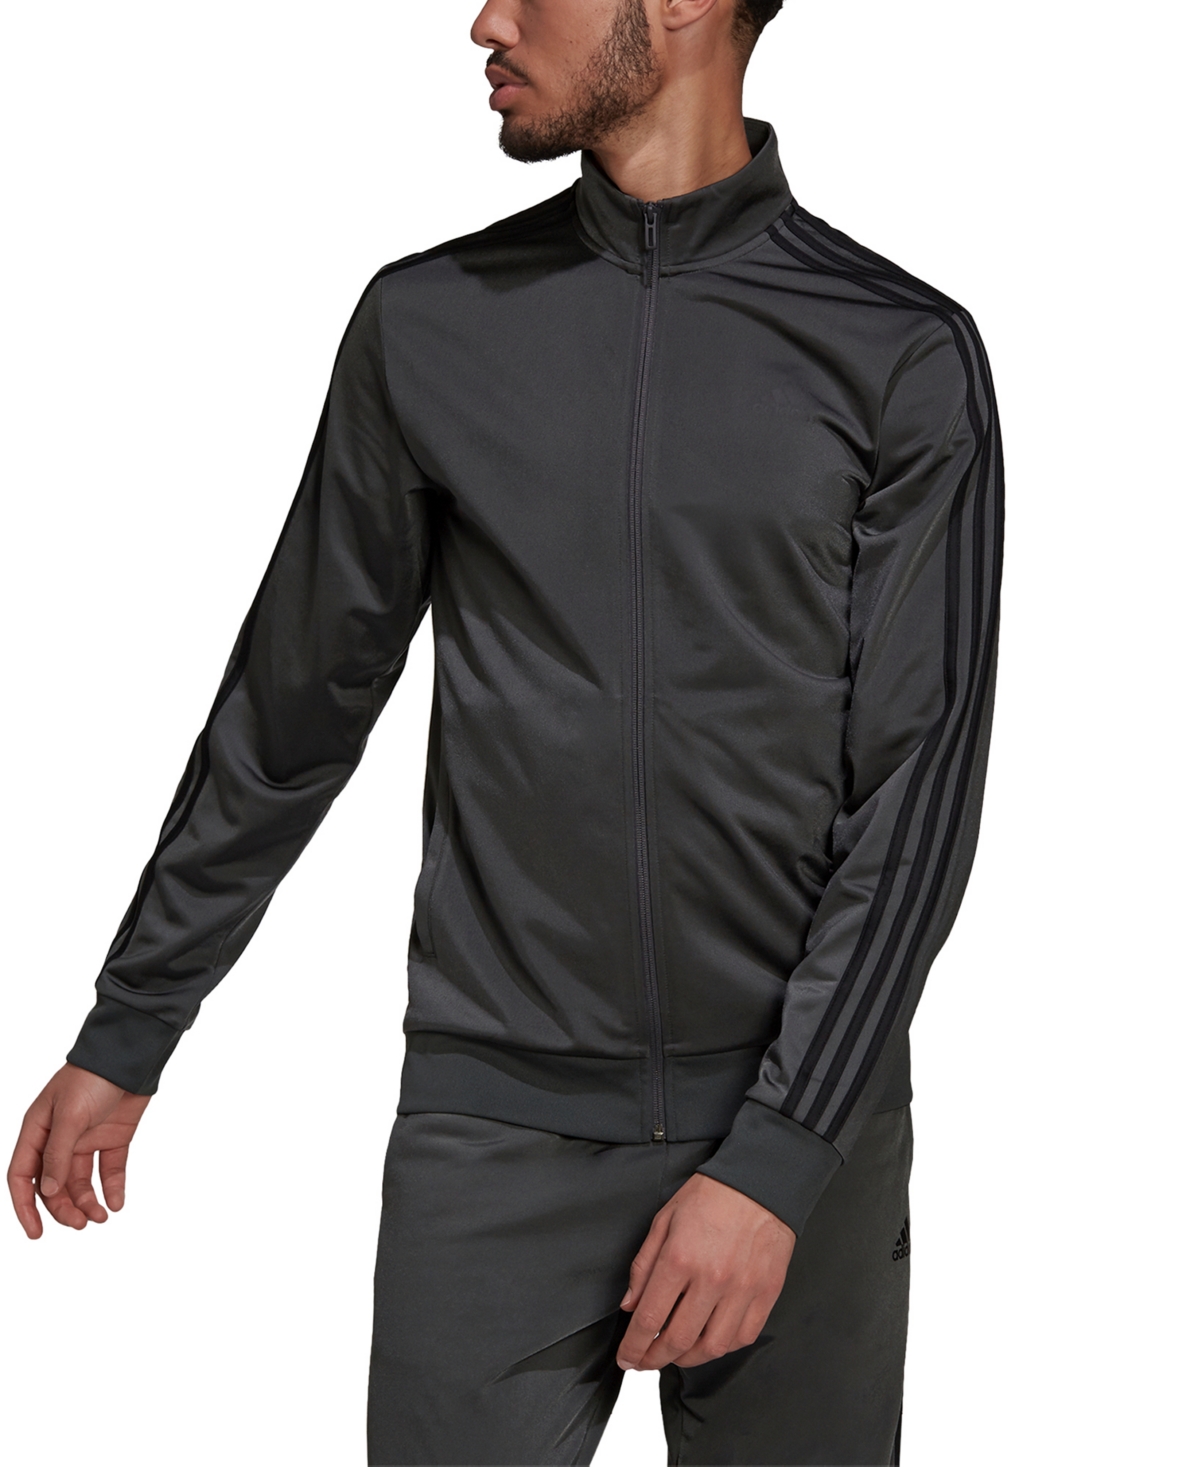 Adidas Originals Men's Tricot Track Jacket In Dark Grey Heather